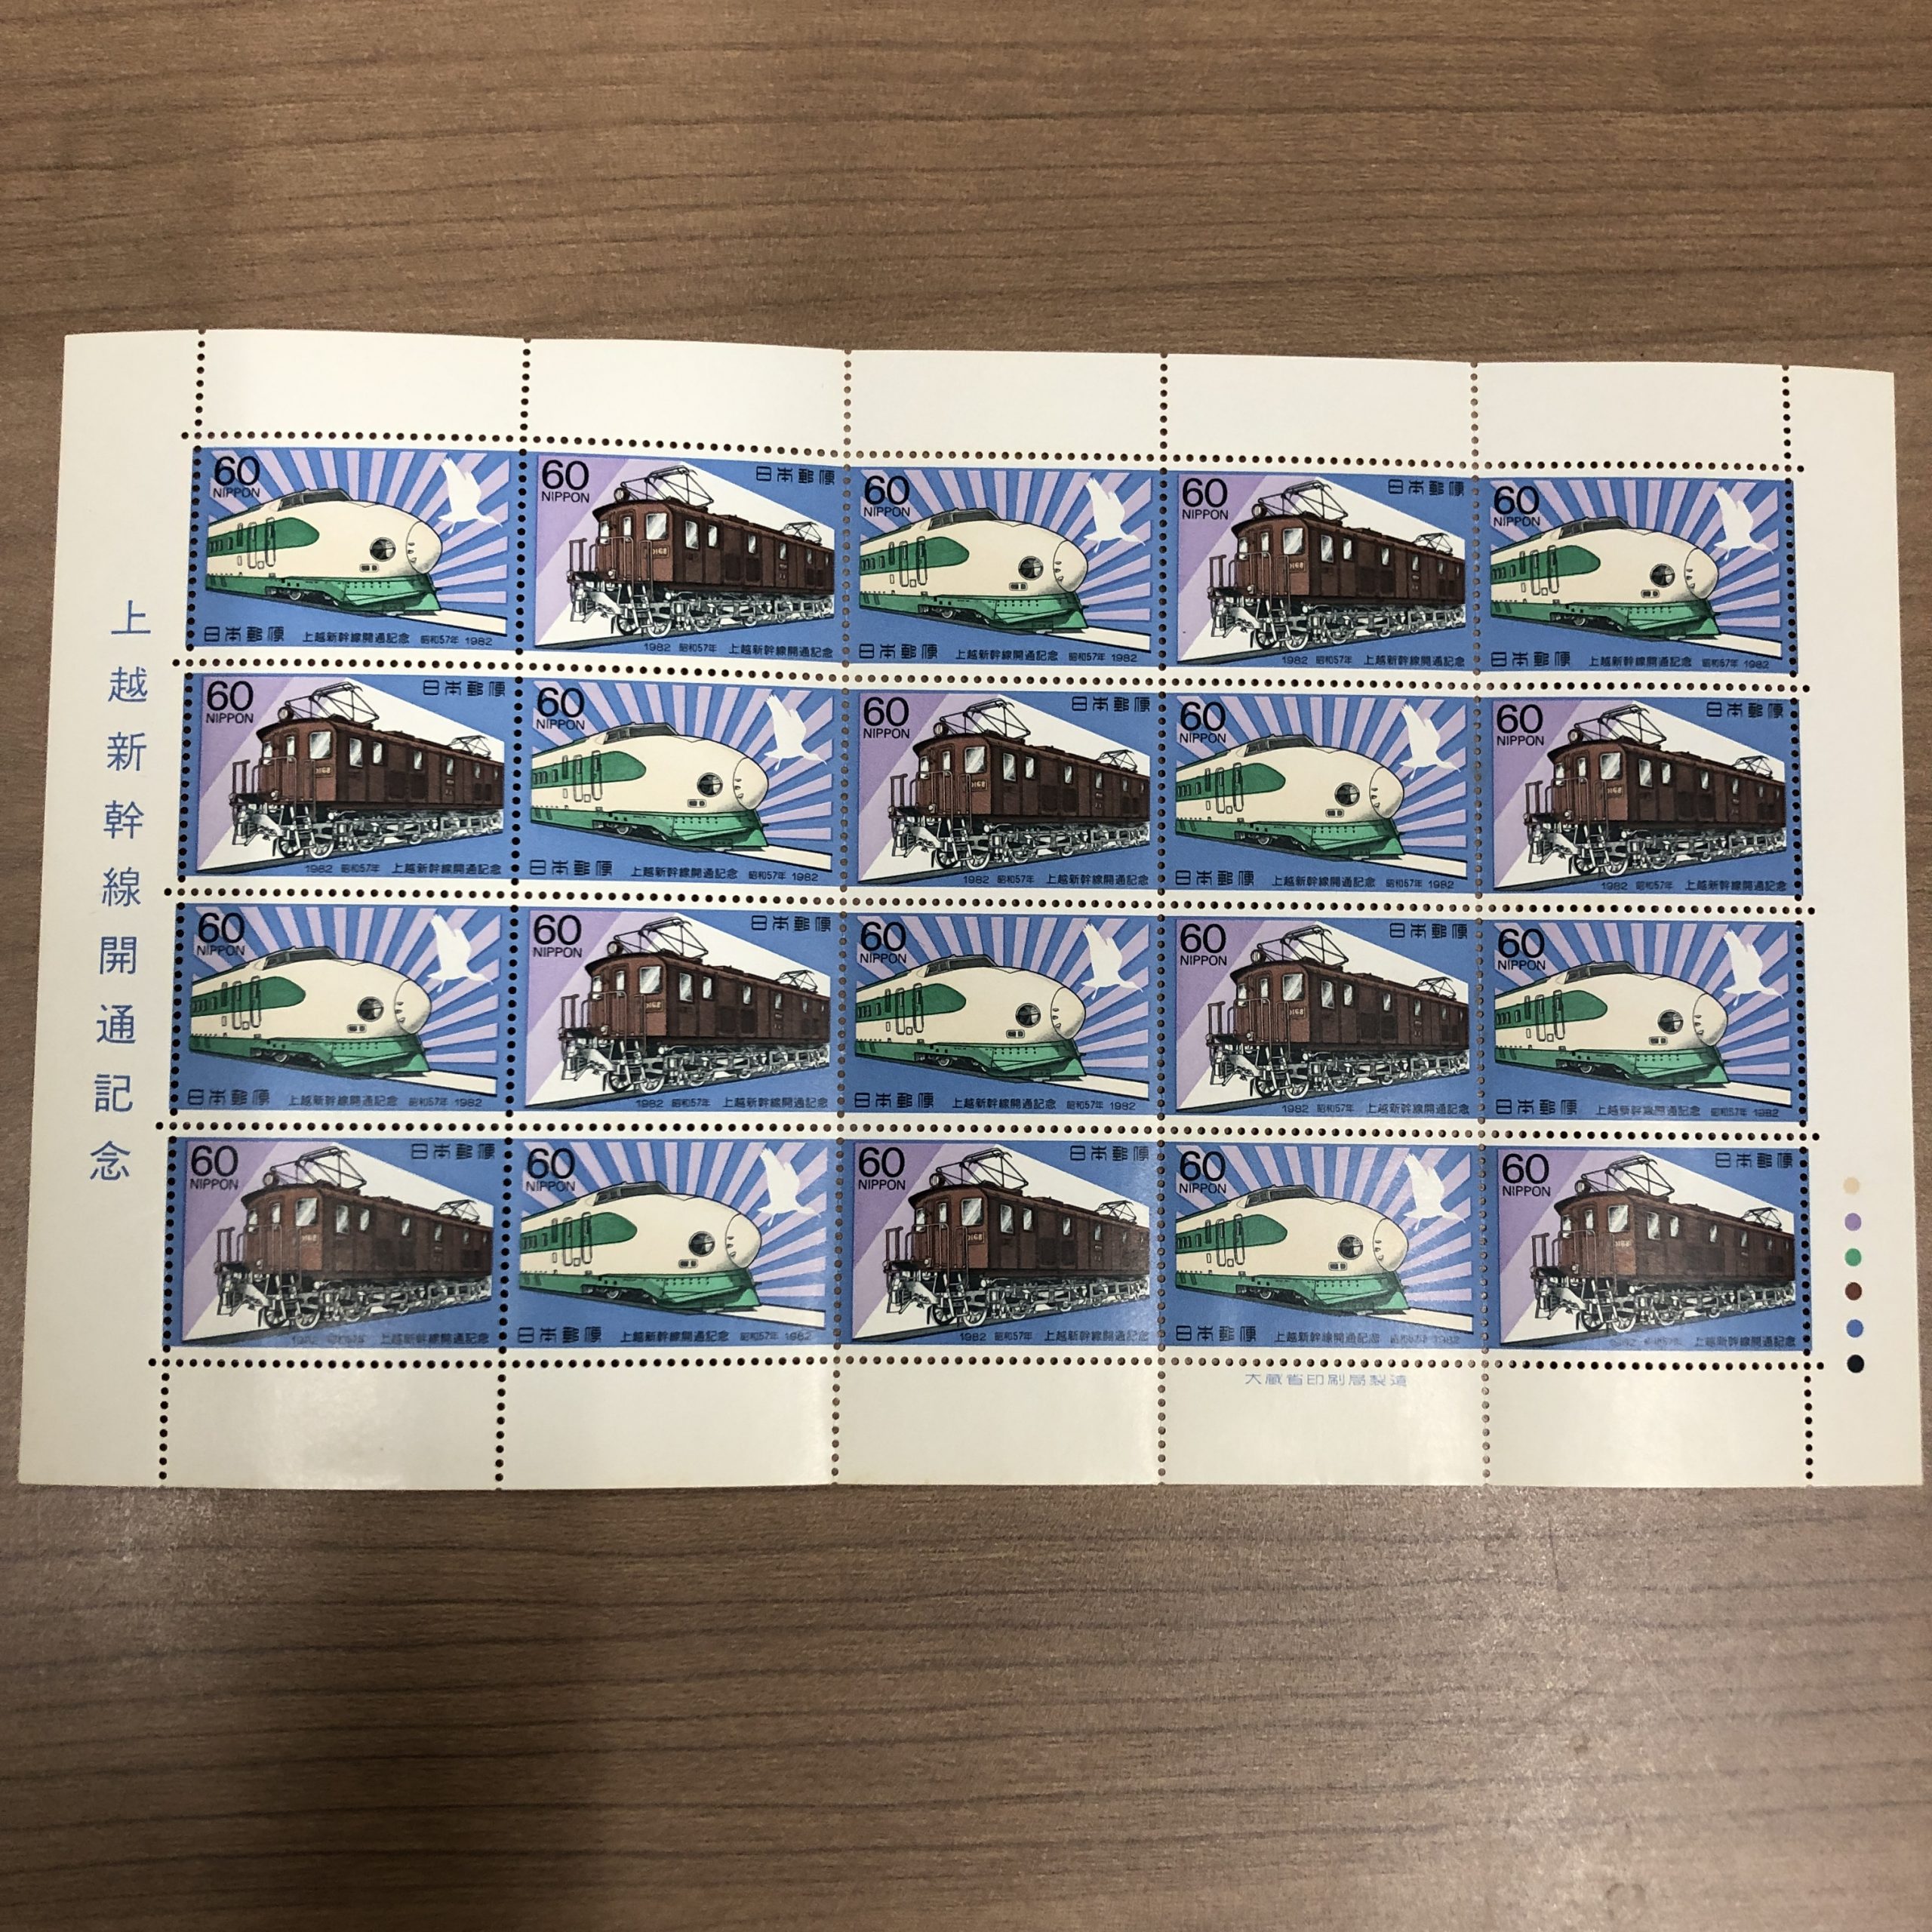 60円切手シート